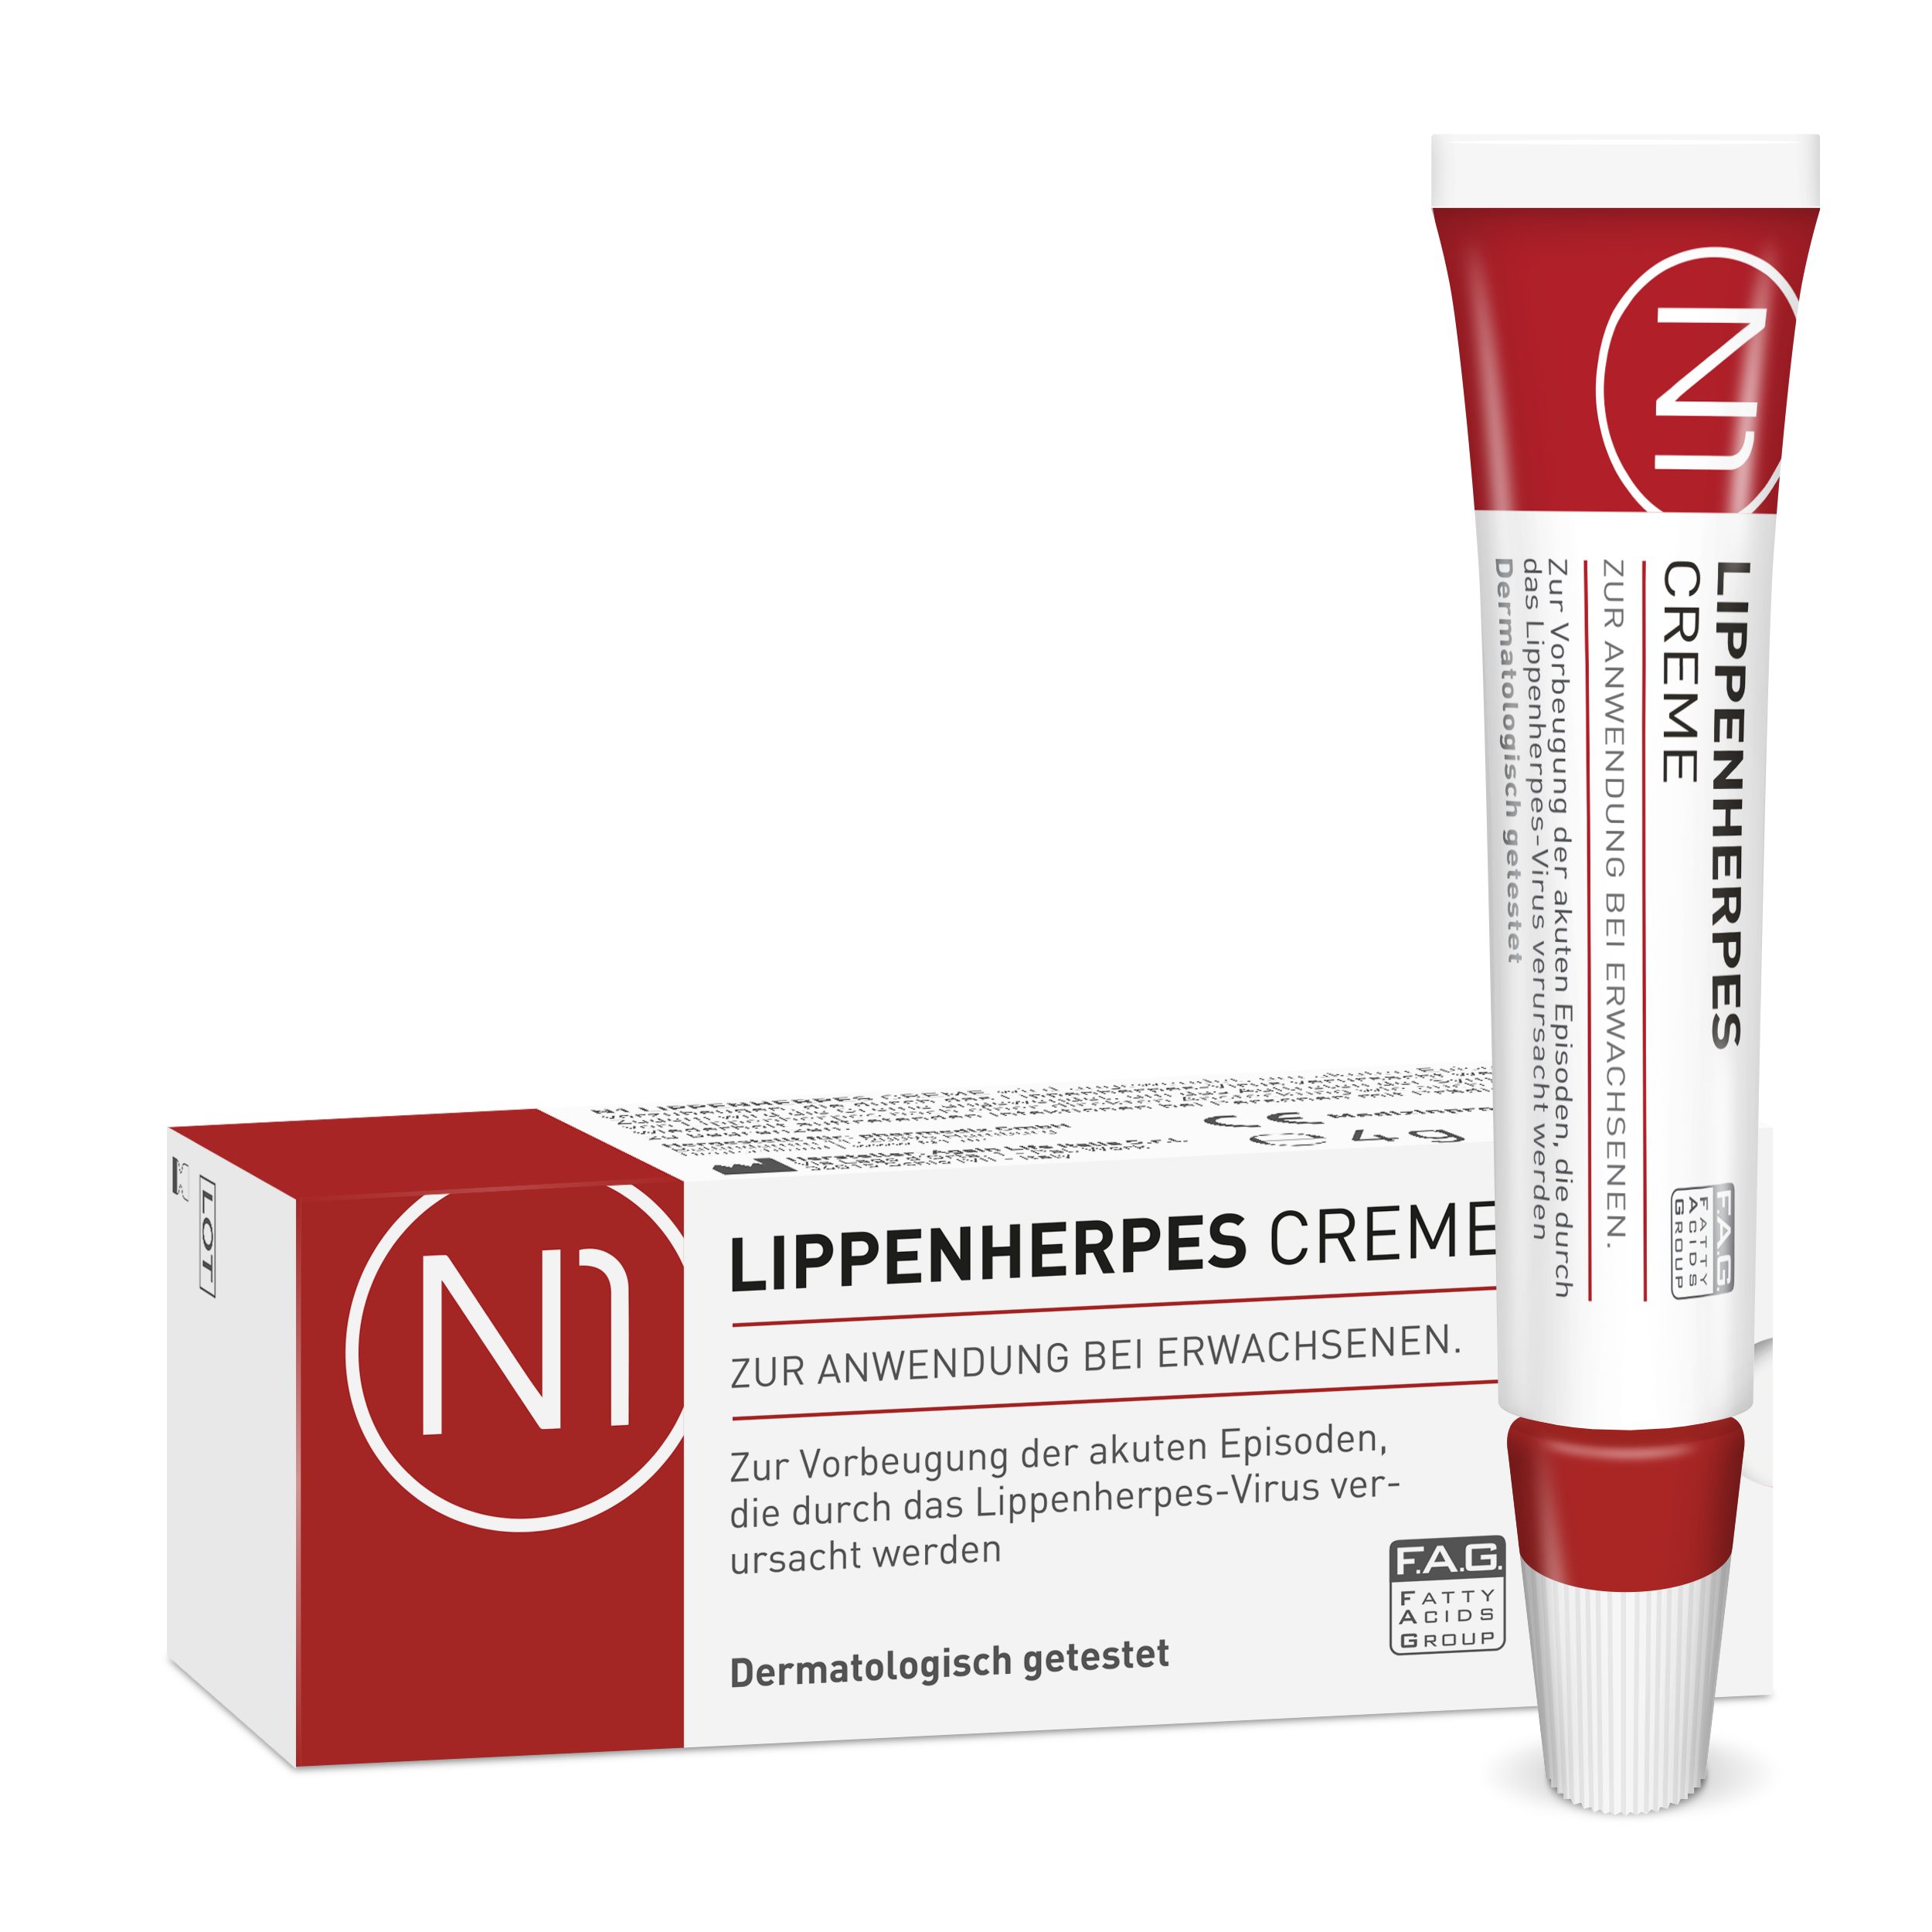 N1 Healthcare patentiert, Lippencreme Creme wirkt geöffnet 6 Herpes sofort, haltbar Monate bei Lippenherpes